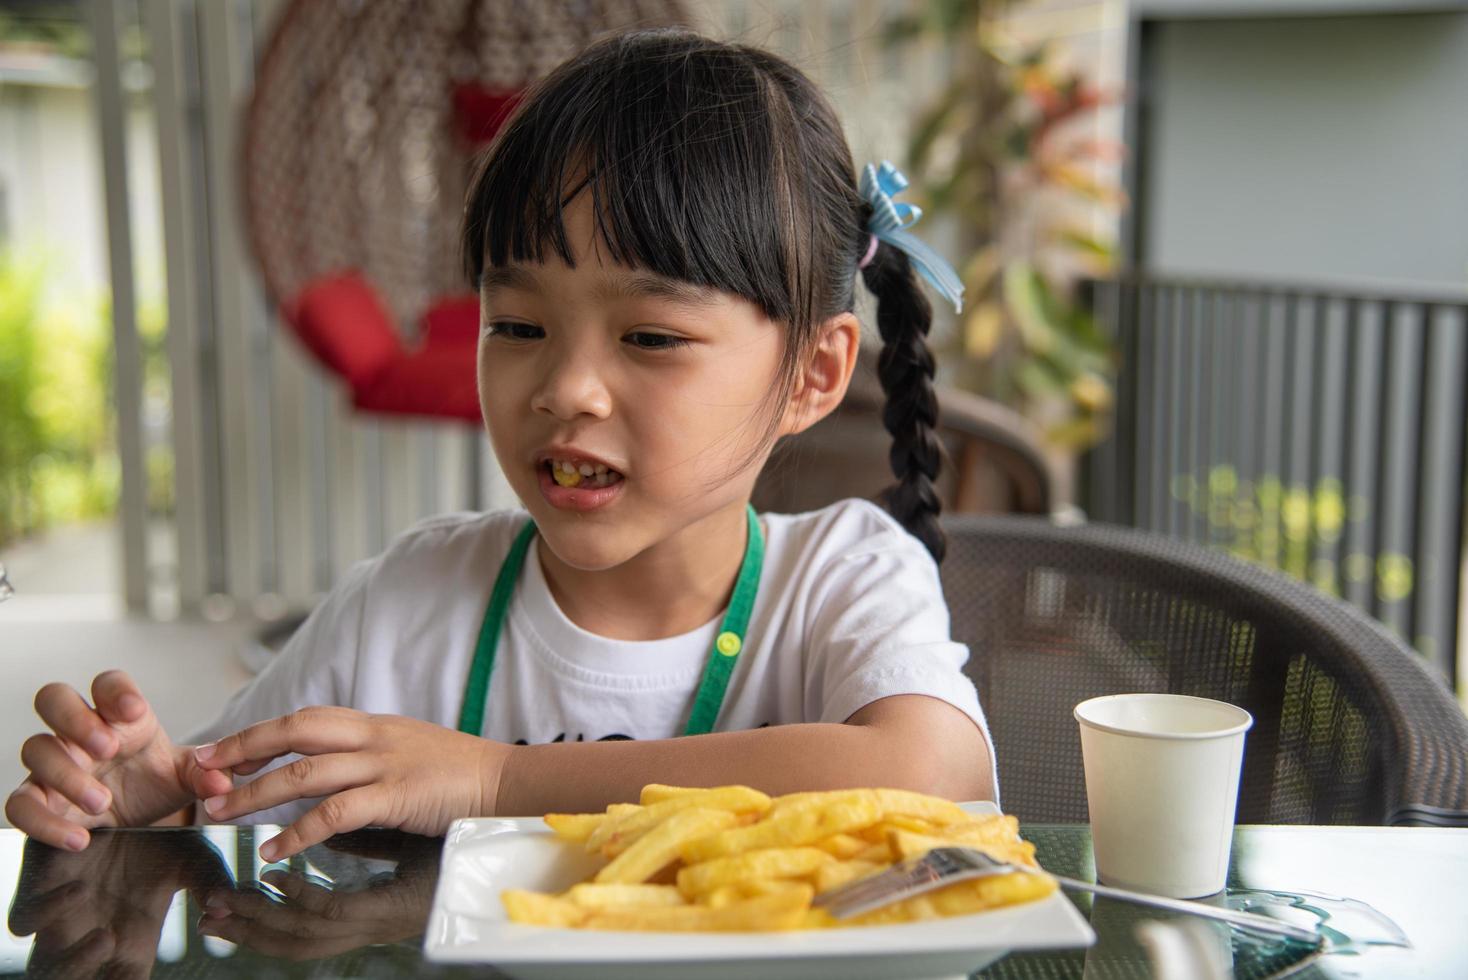 jong Aziatisch meisje aan het eten Frans Patat jong kind pret gelukkig aardappel snel voedsel. foto